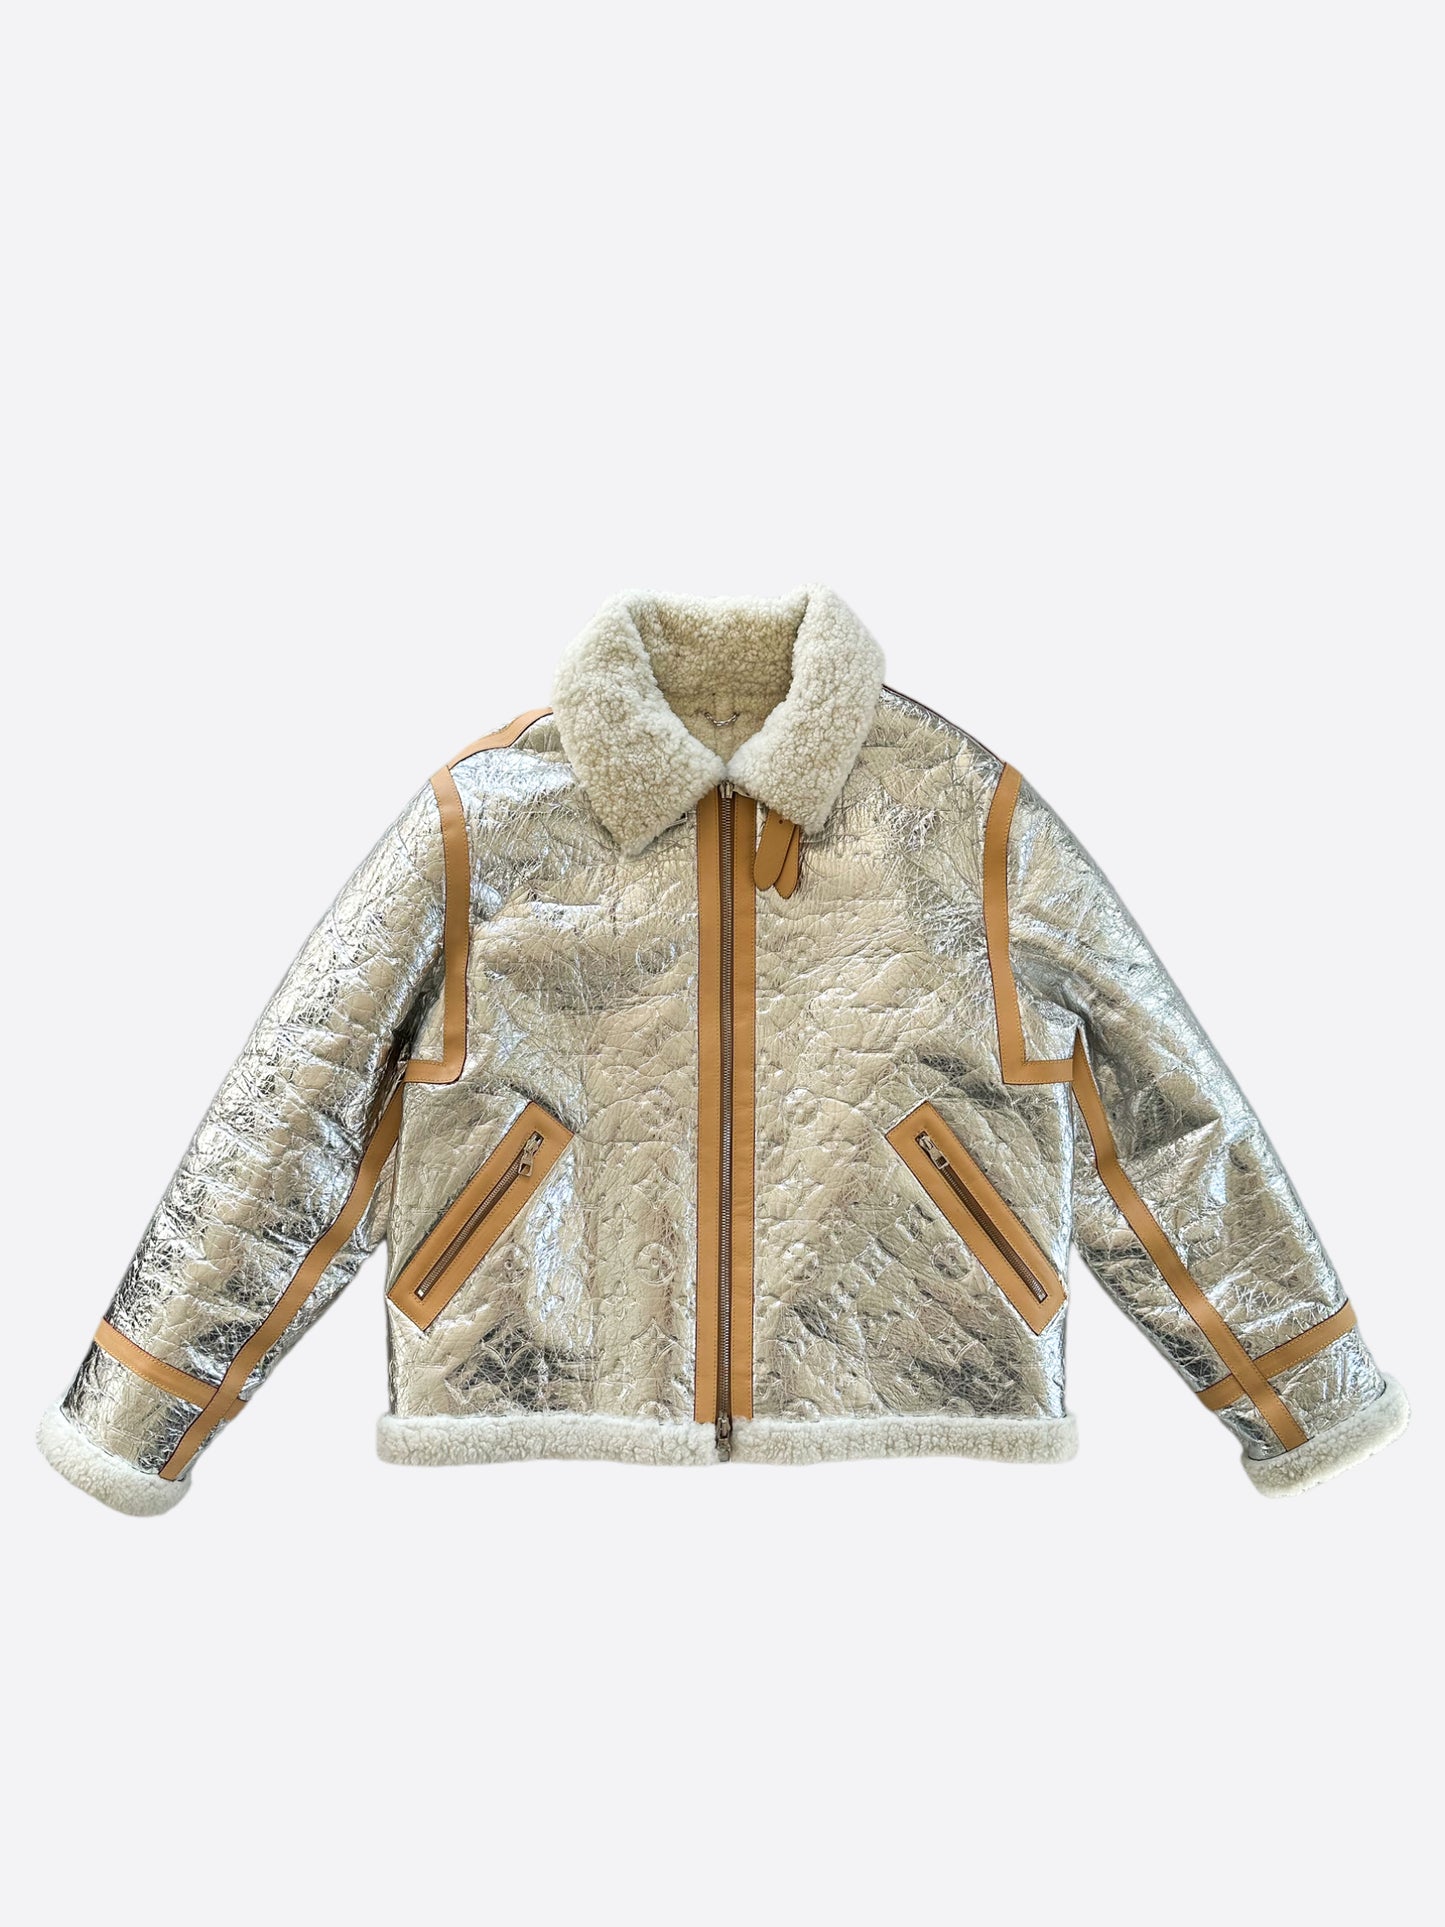 Louis Vuitton Mirror Monogram Shearling Jacket